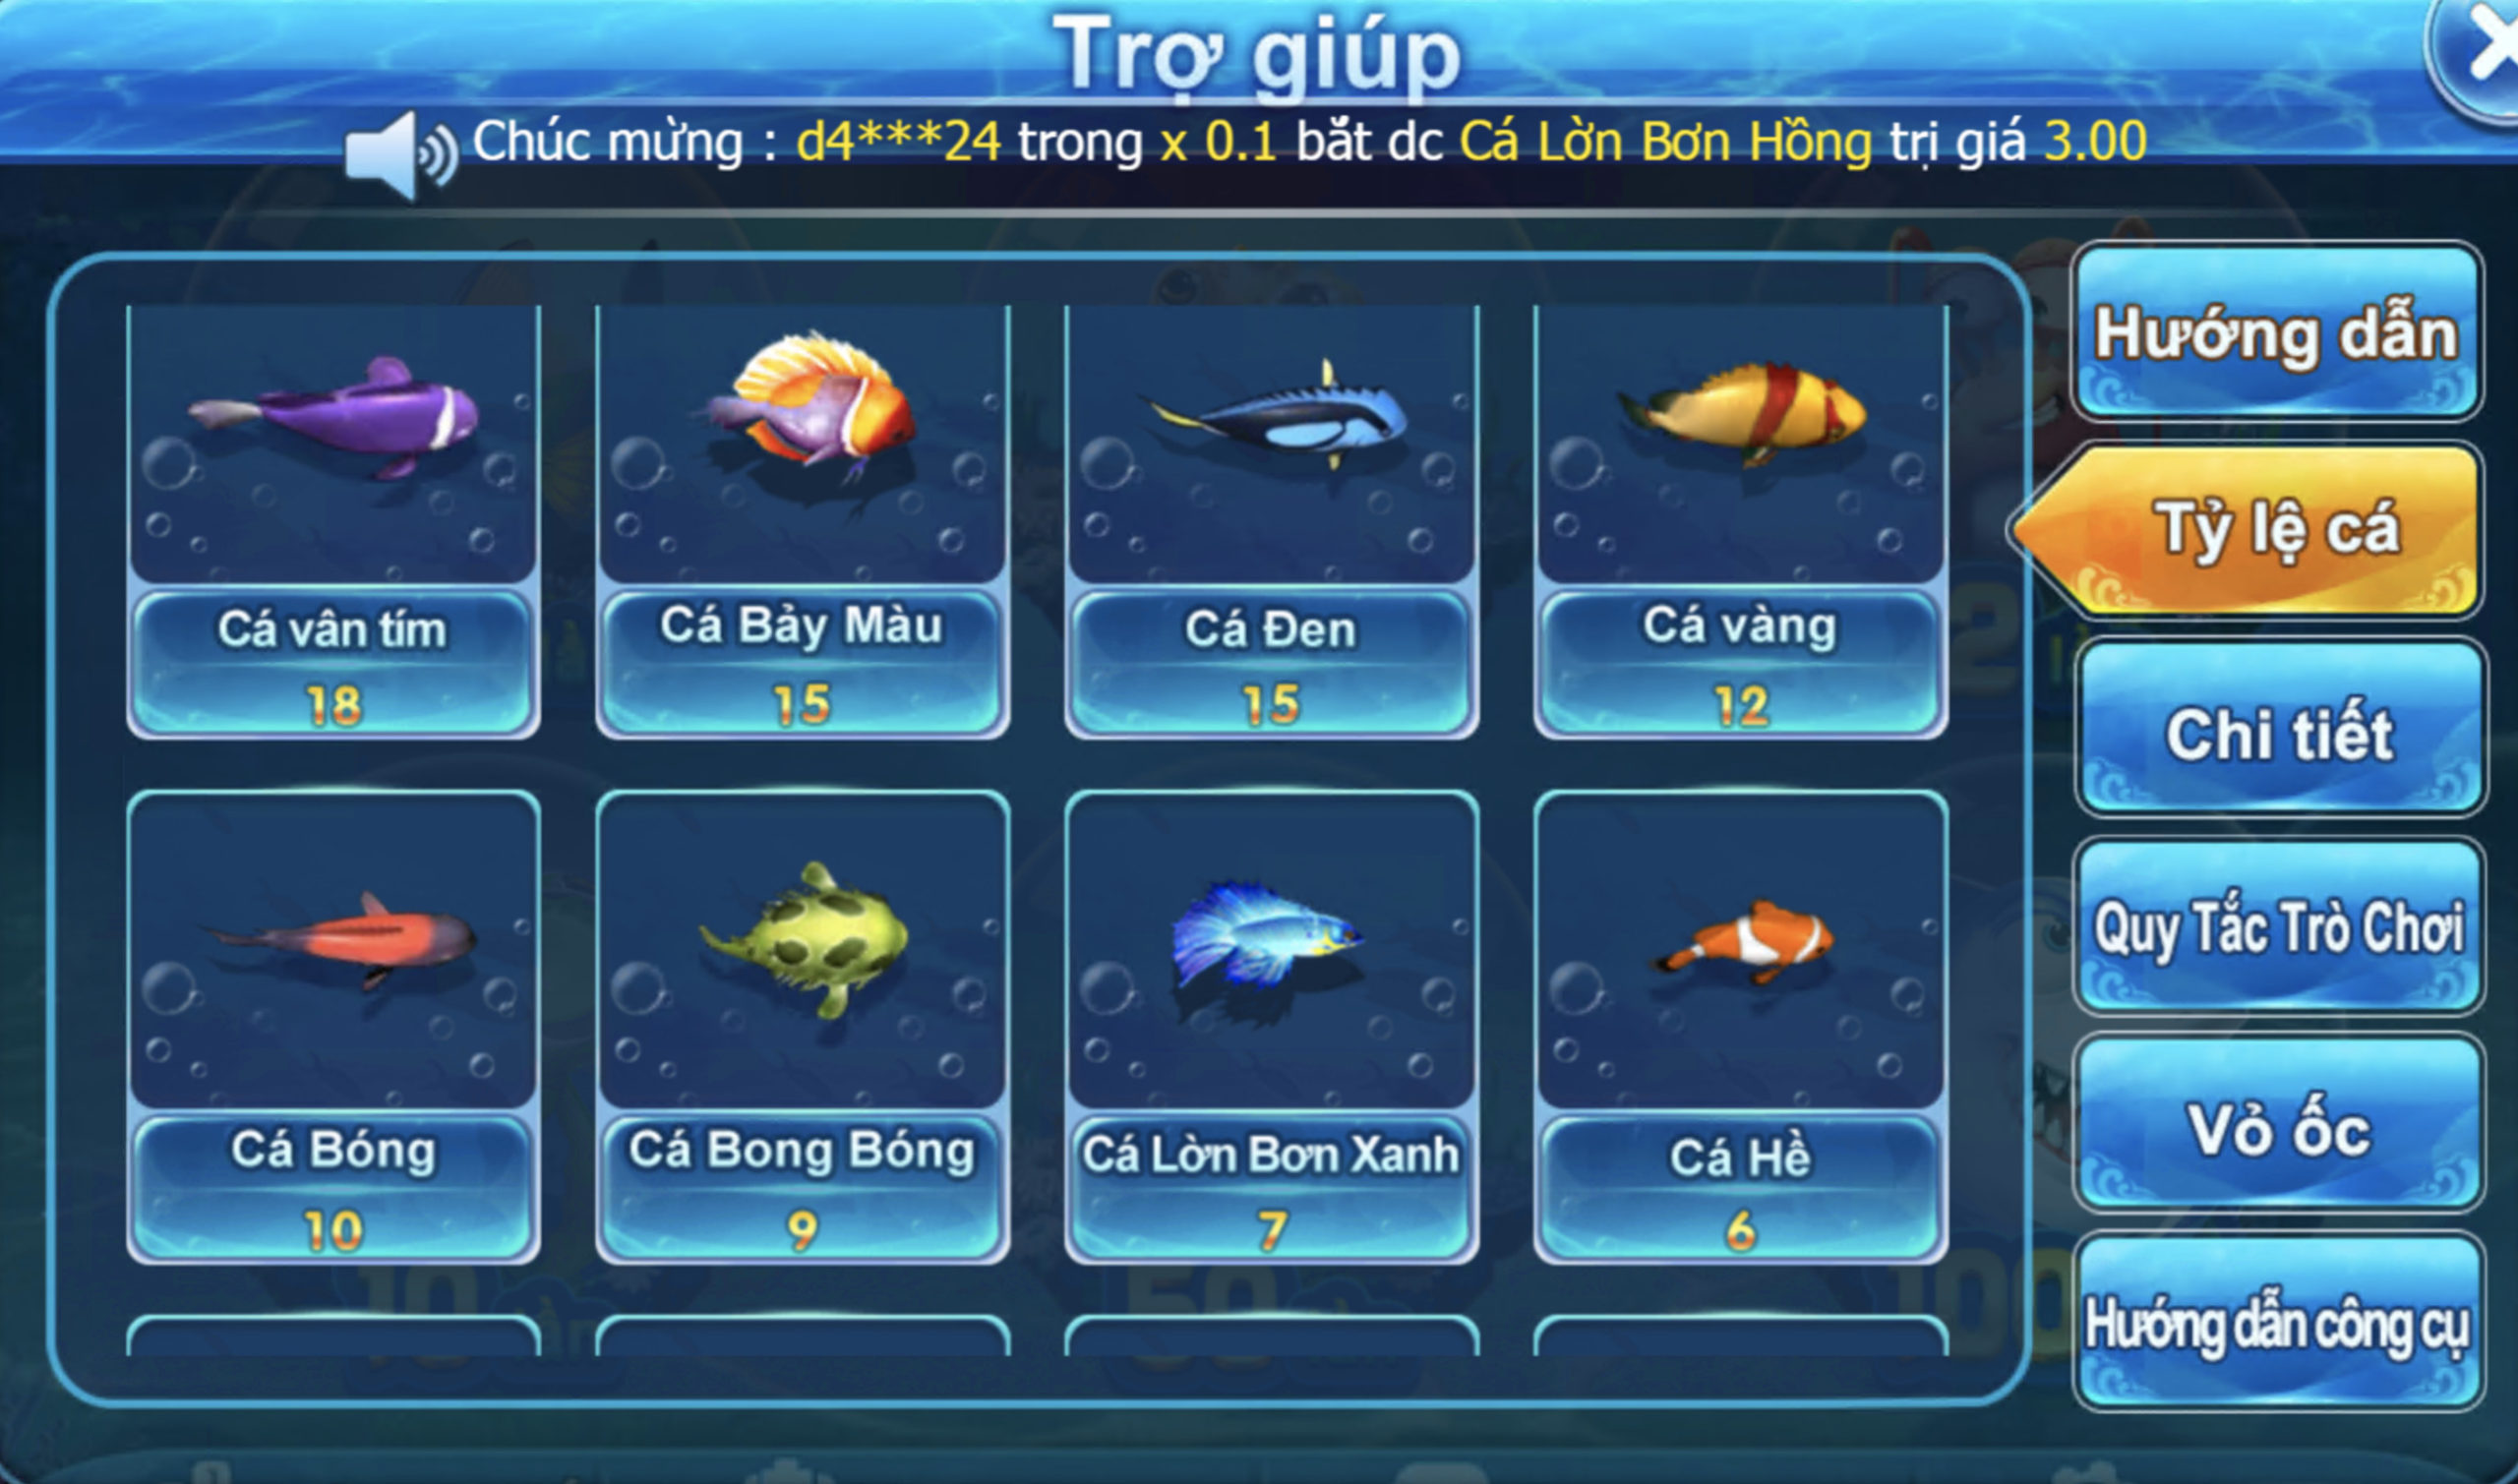 Các loại cá trong game